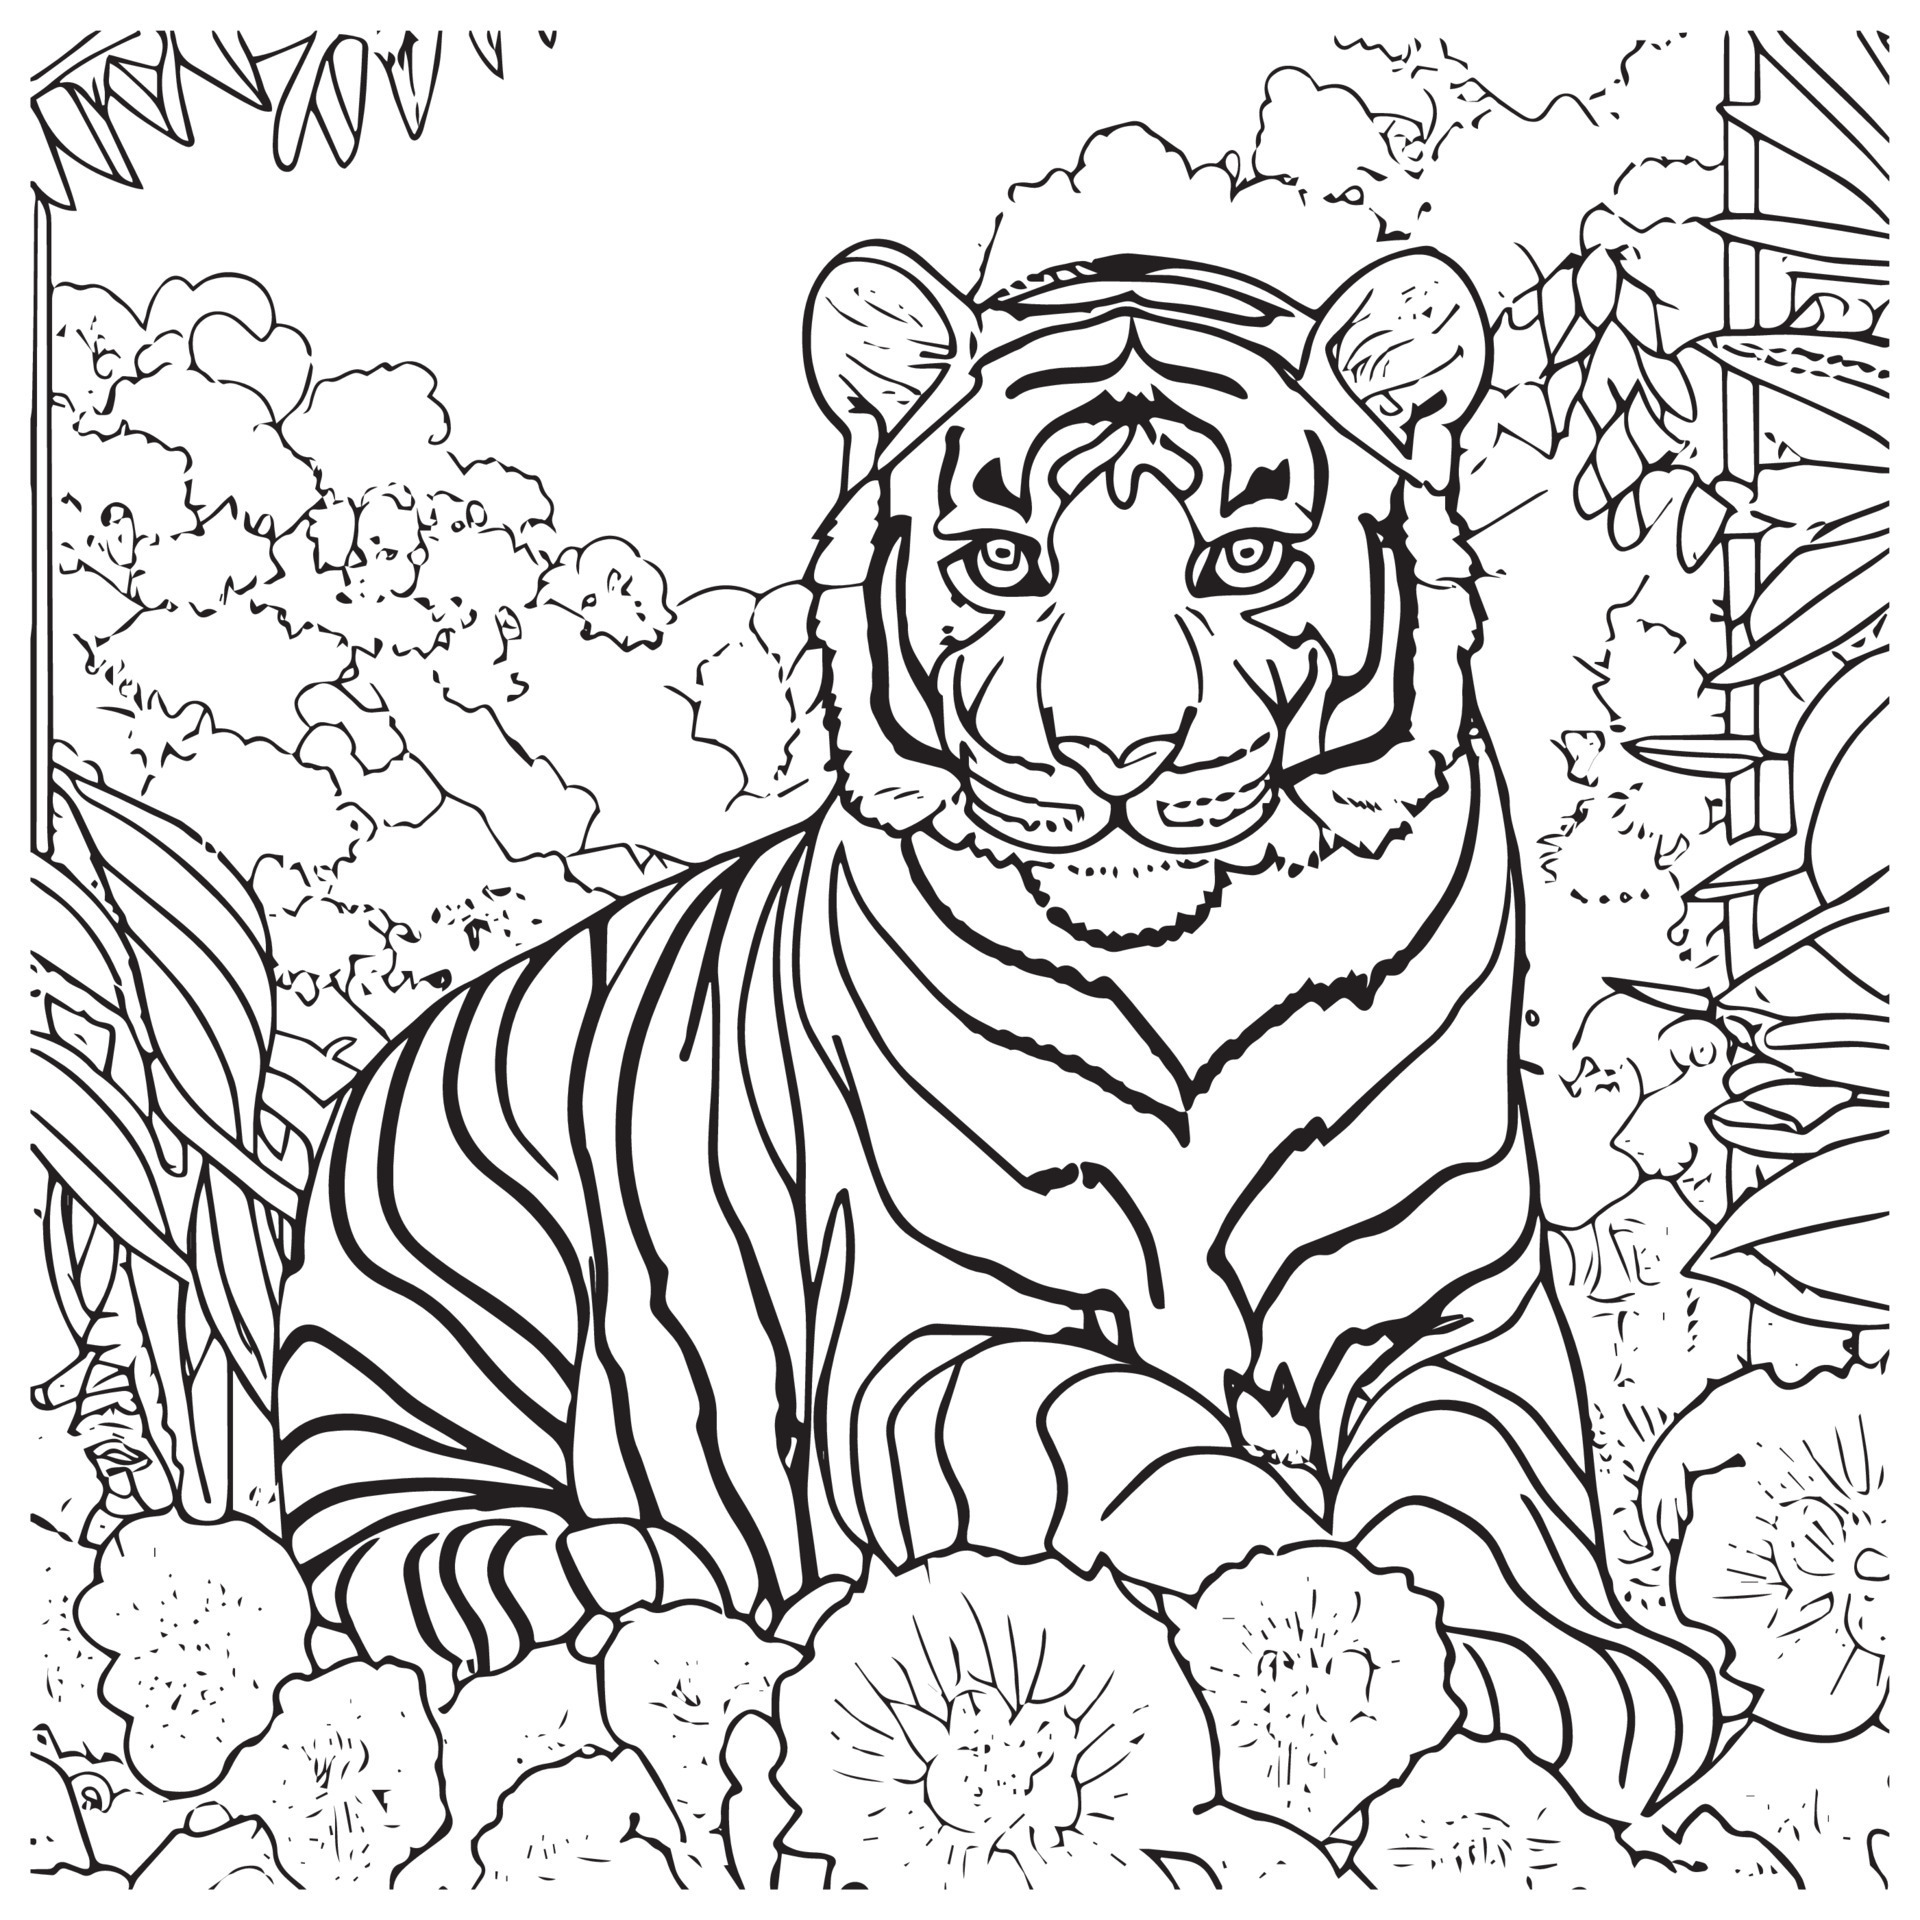 Tiger Pencil Sketch – Robin Good Art